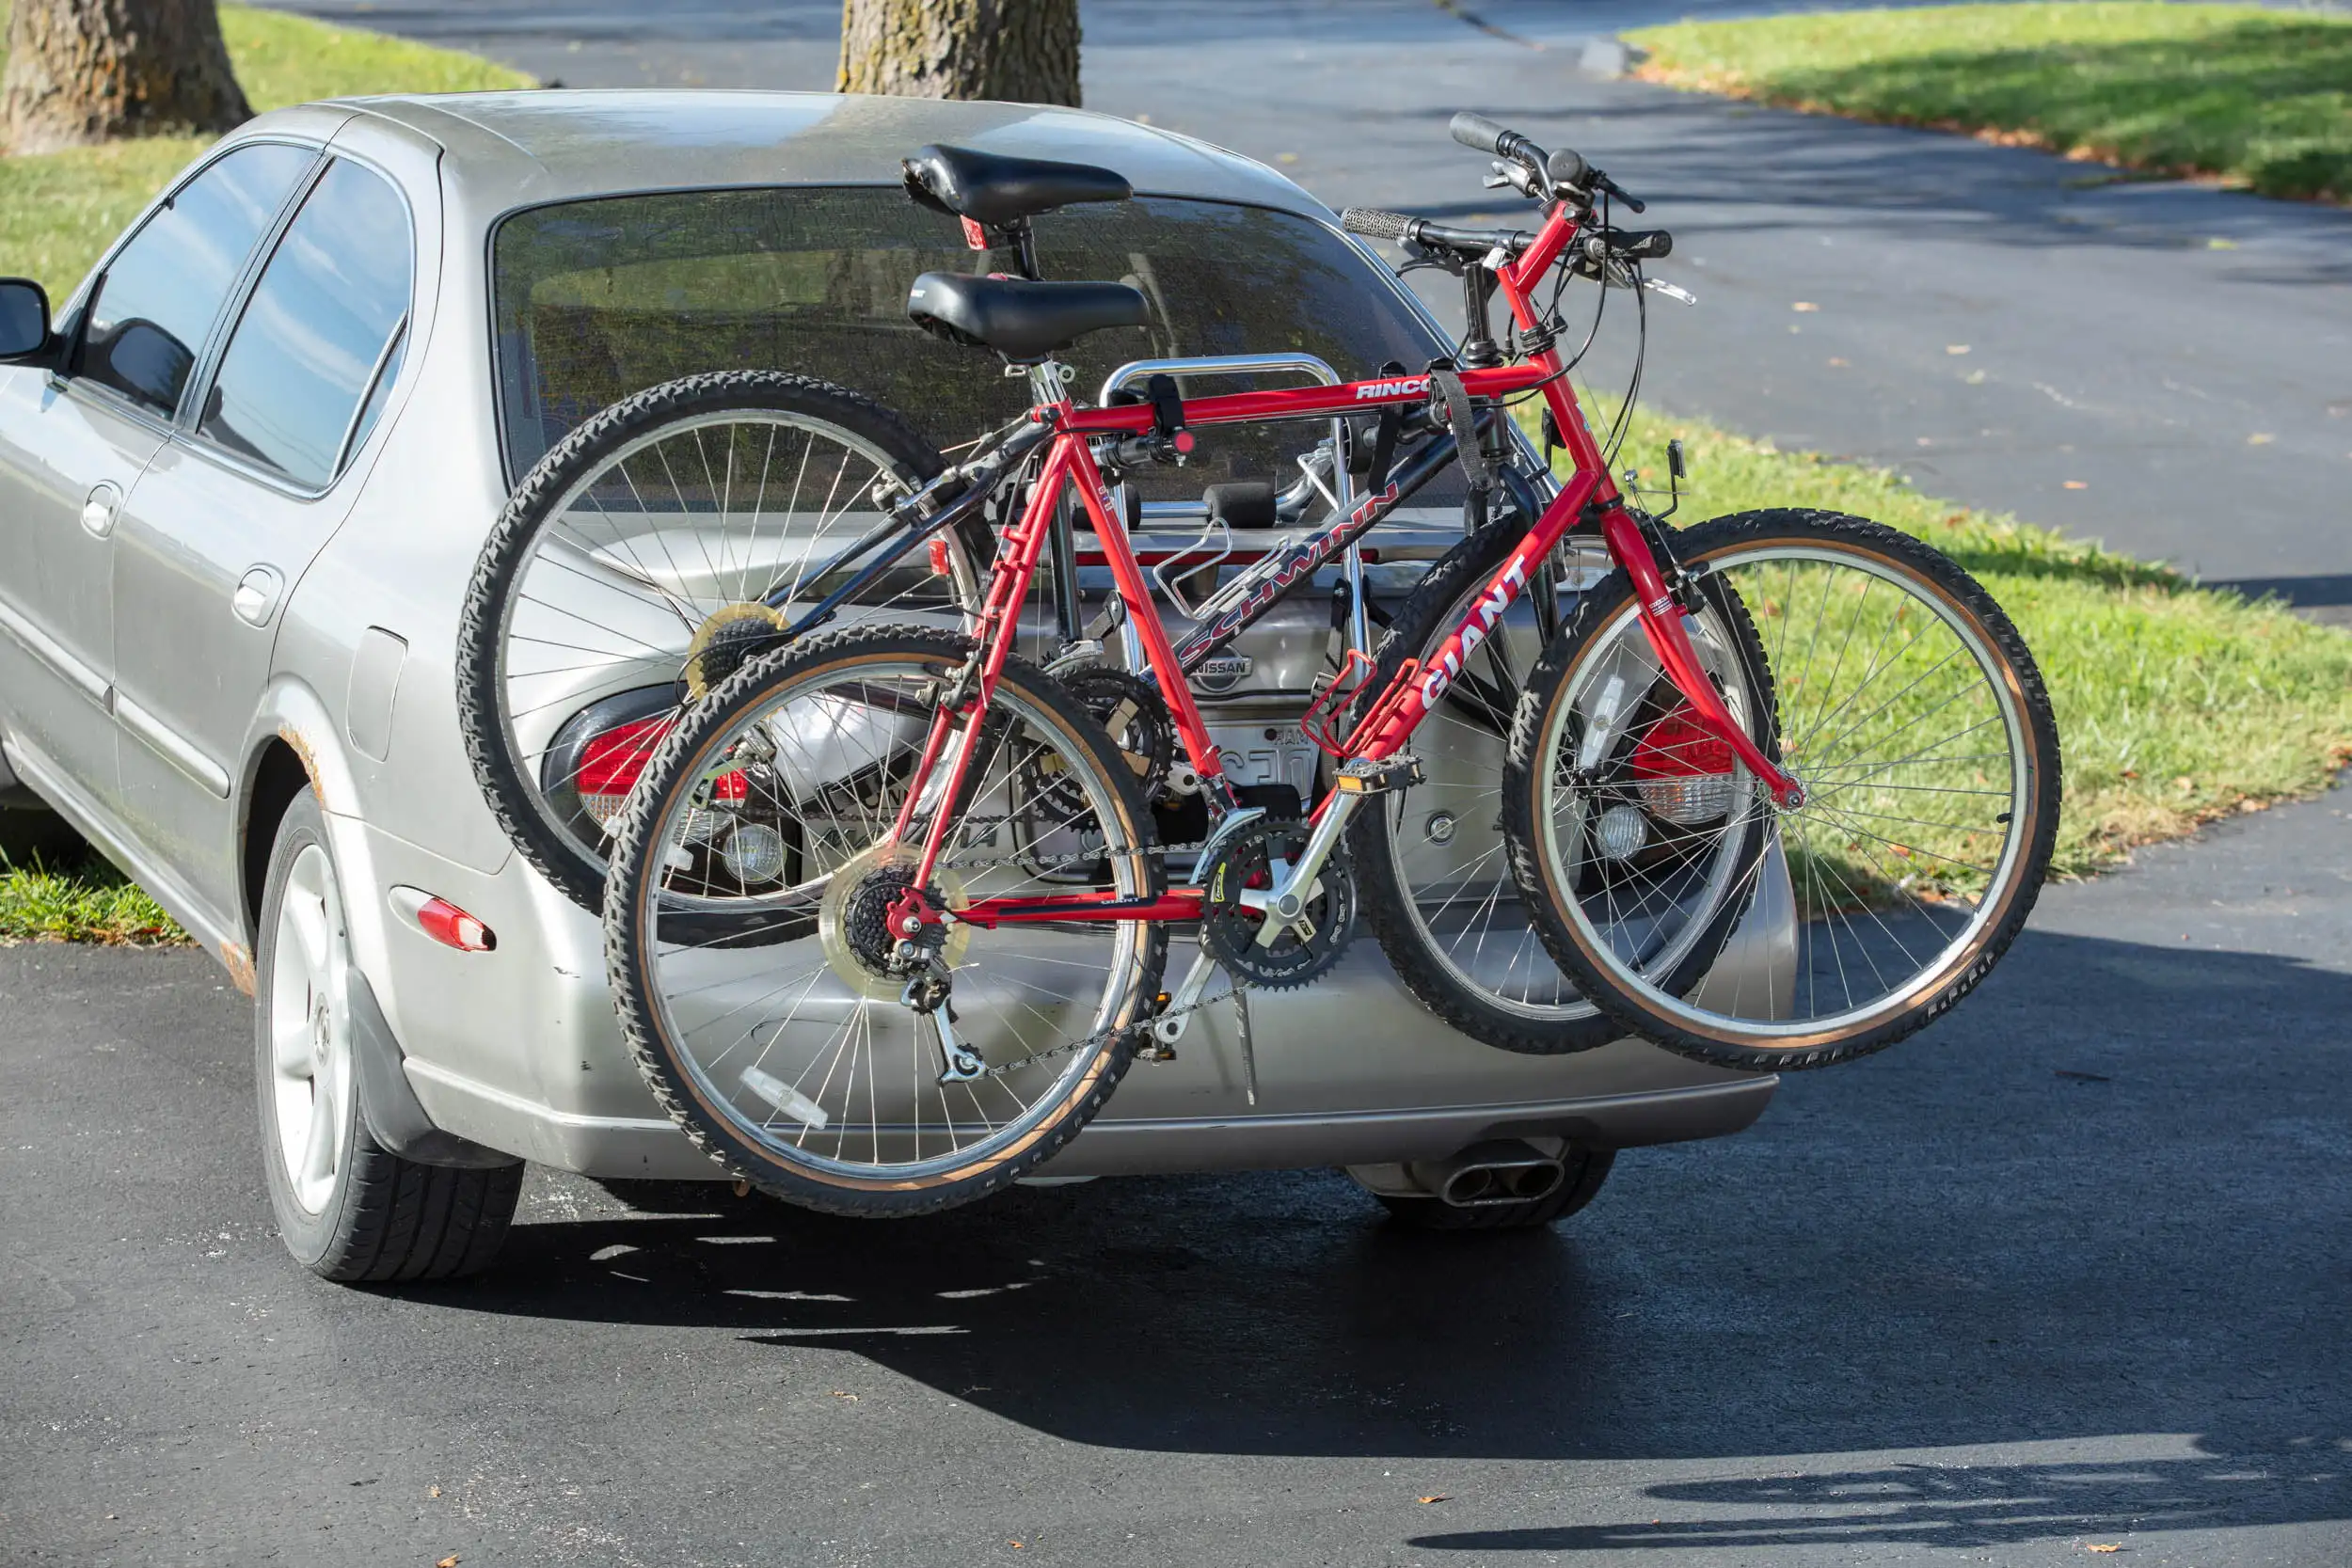 

Багажник 2-велосипедная перевозка для транспортных средств-легкий алюминий-ограничитель 70 фунтов-модель 10104052